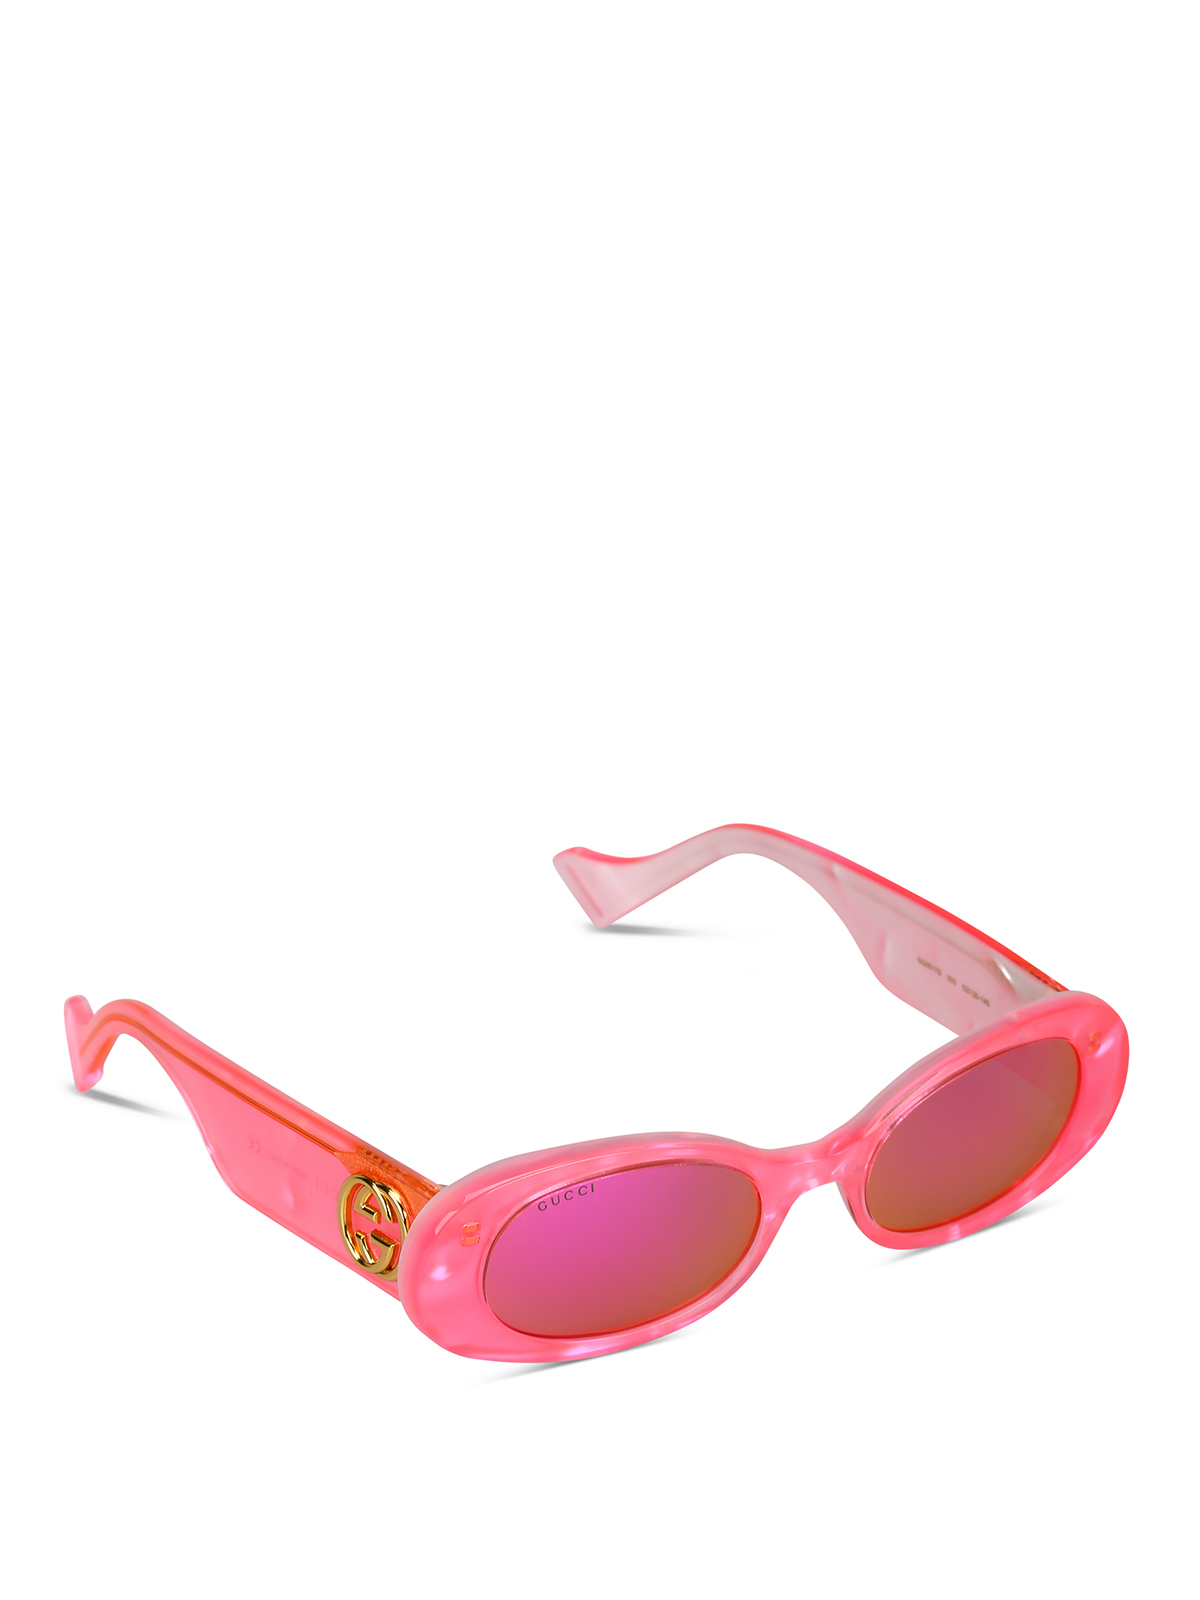 gucci oval sunglasses